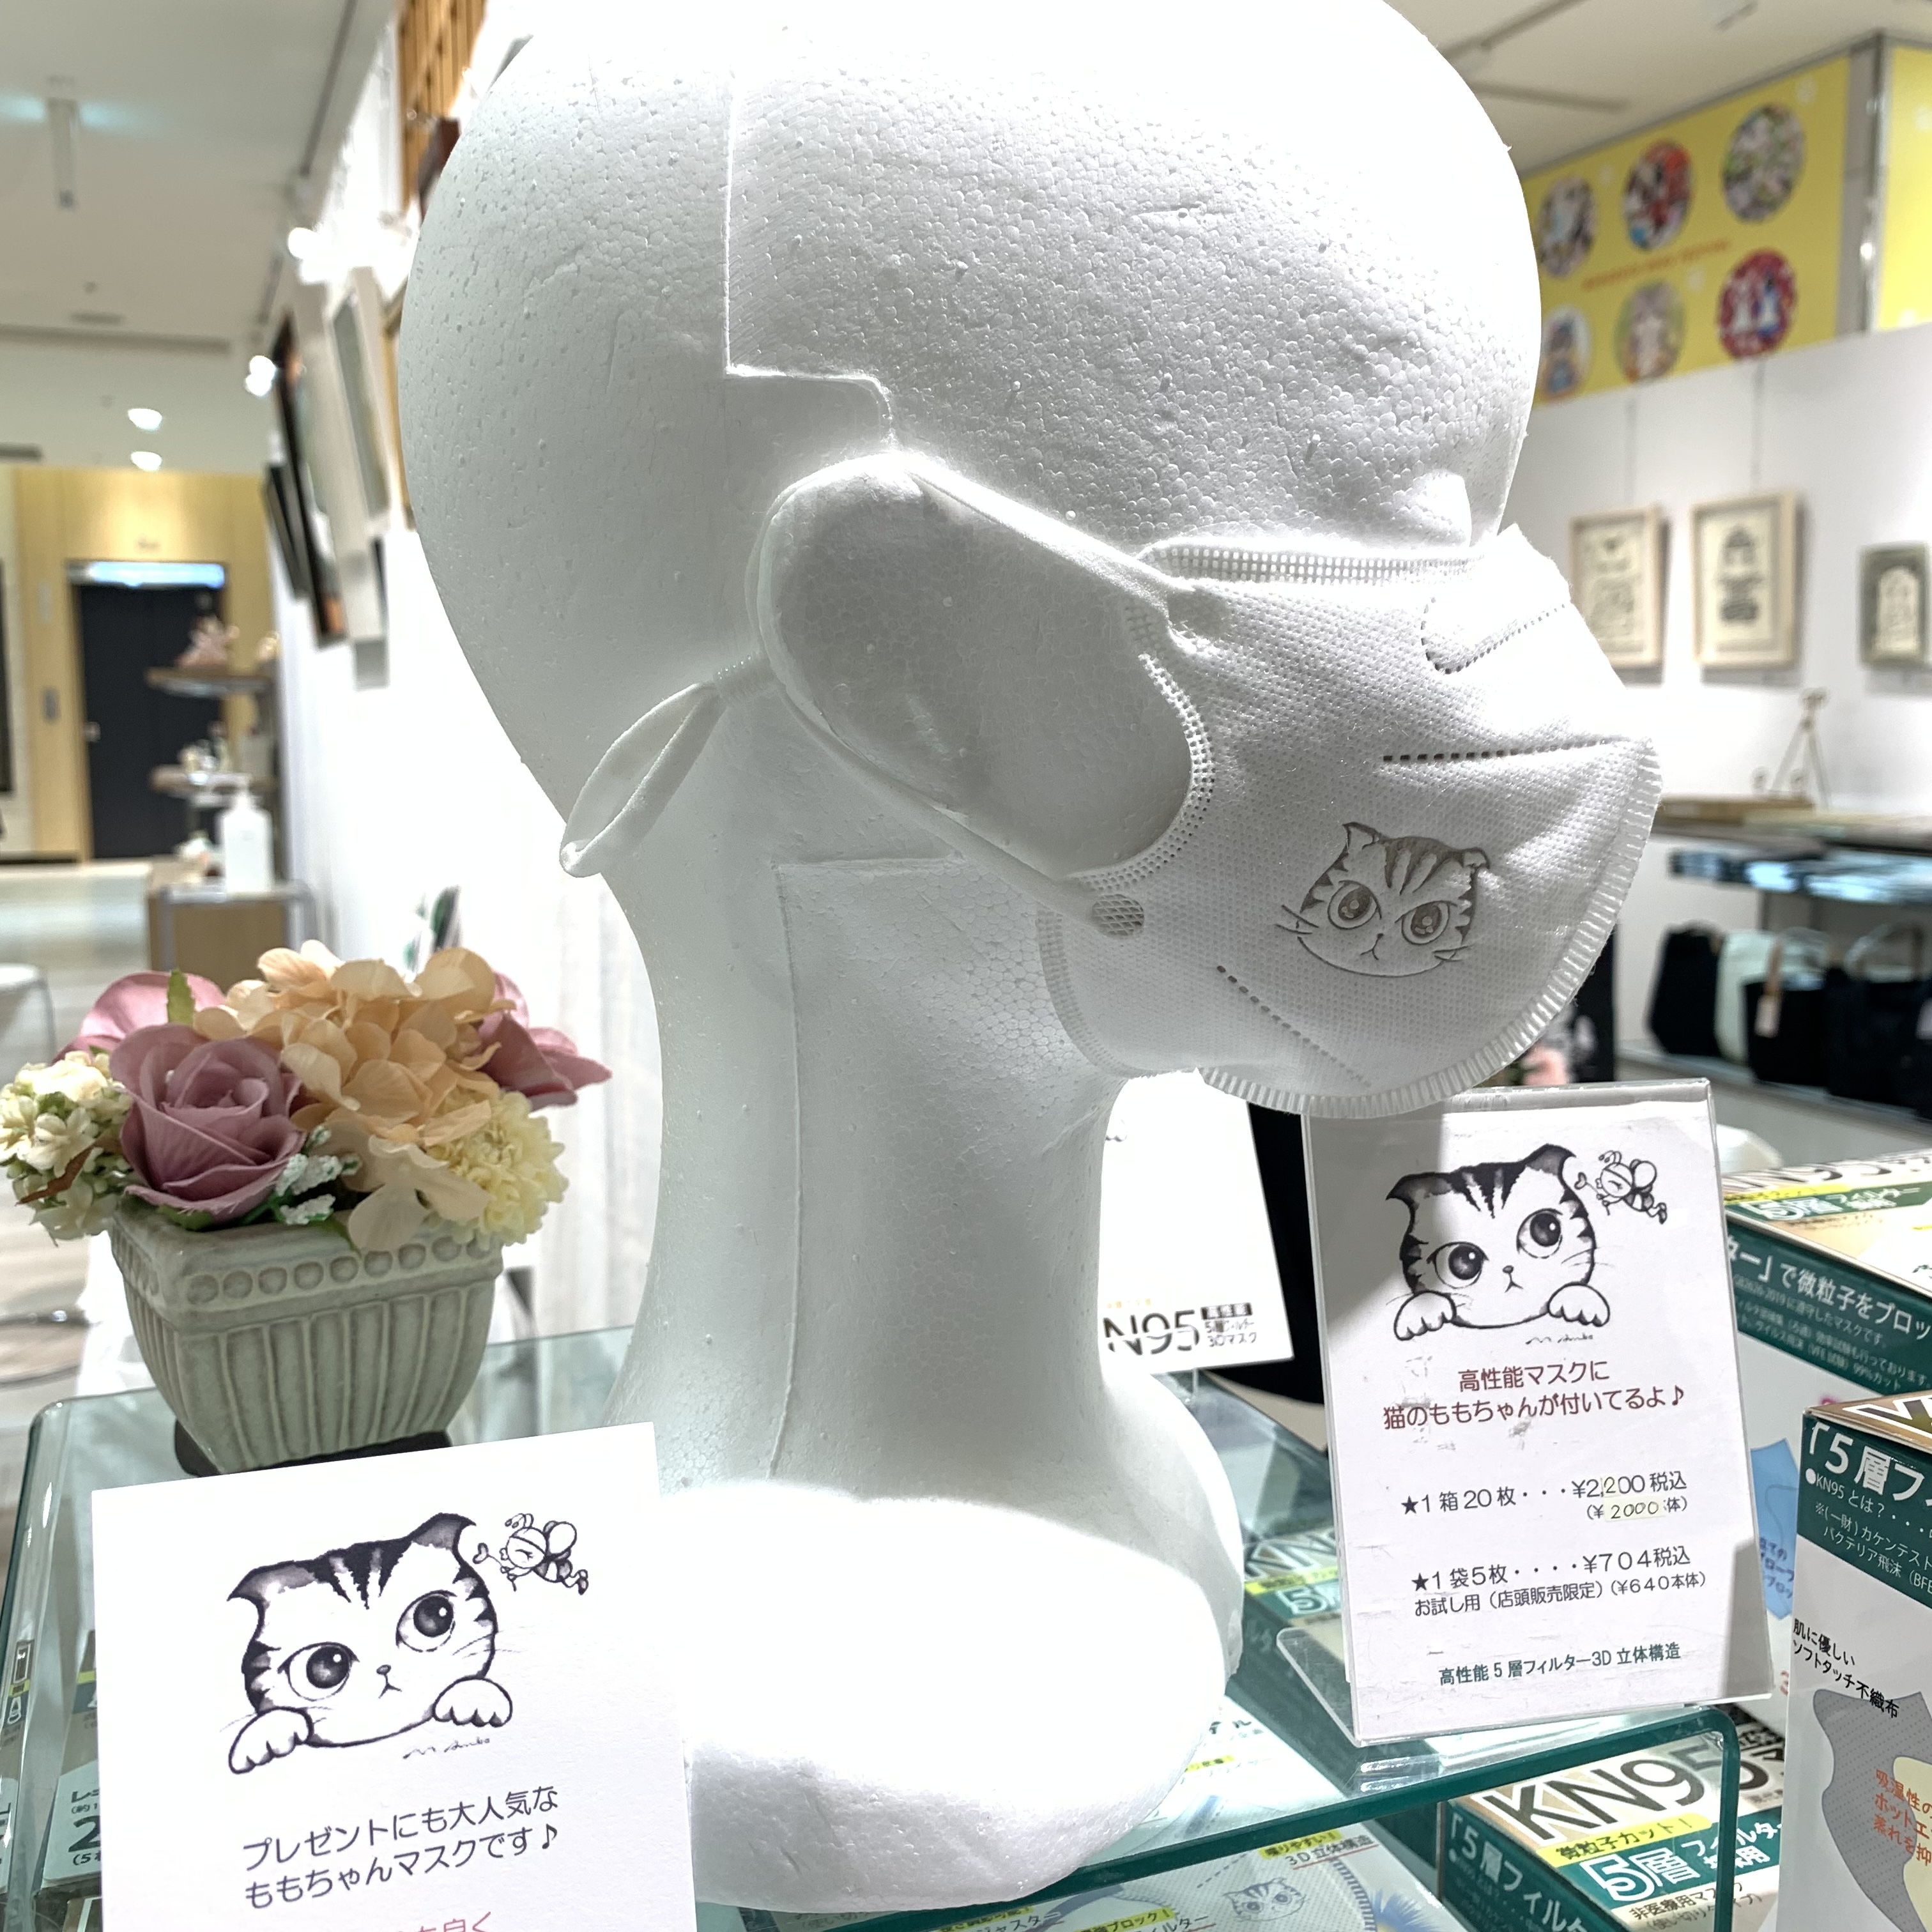 阪神梅田「まるごと猫フェスティバル2022」にて、KN95コラボマスクを好評販売中です！